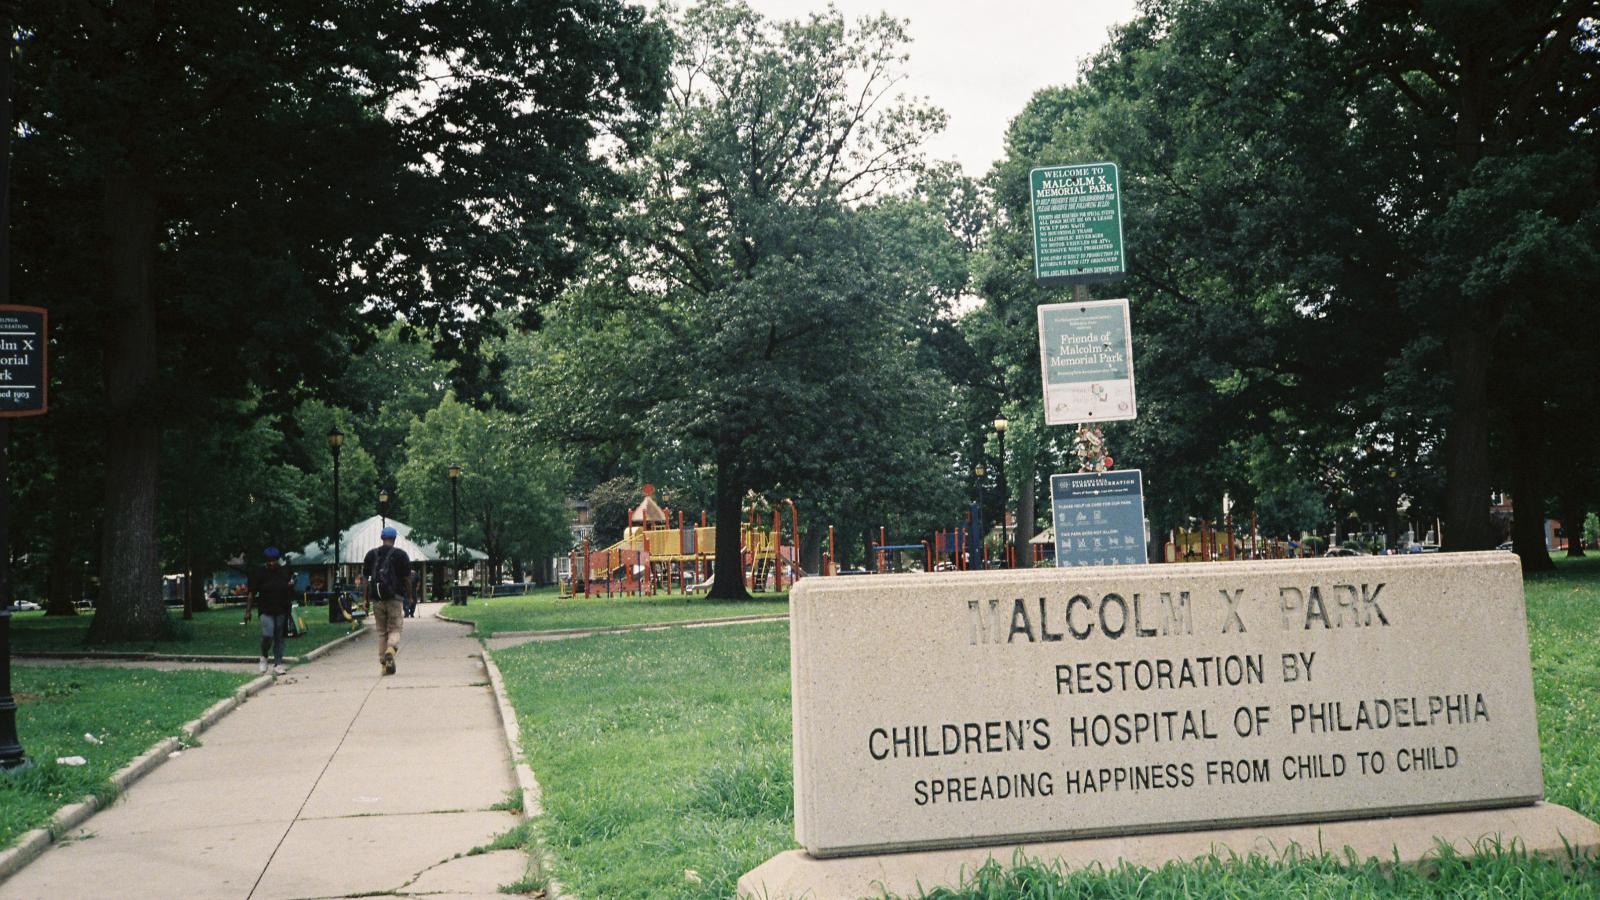 Malcolm X Park